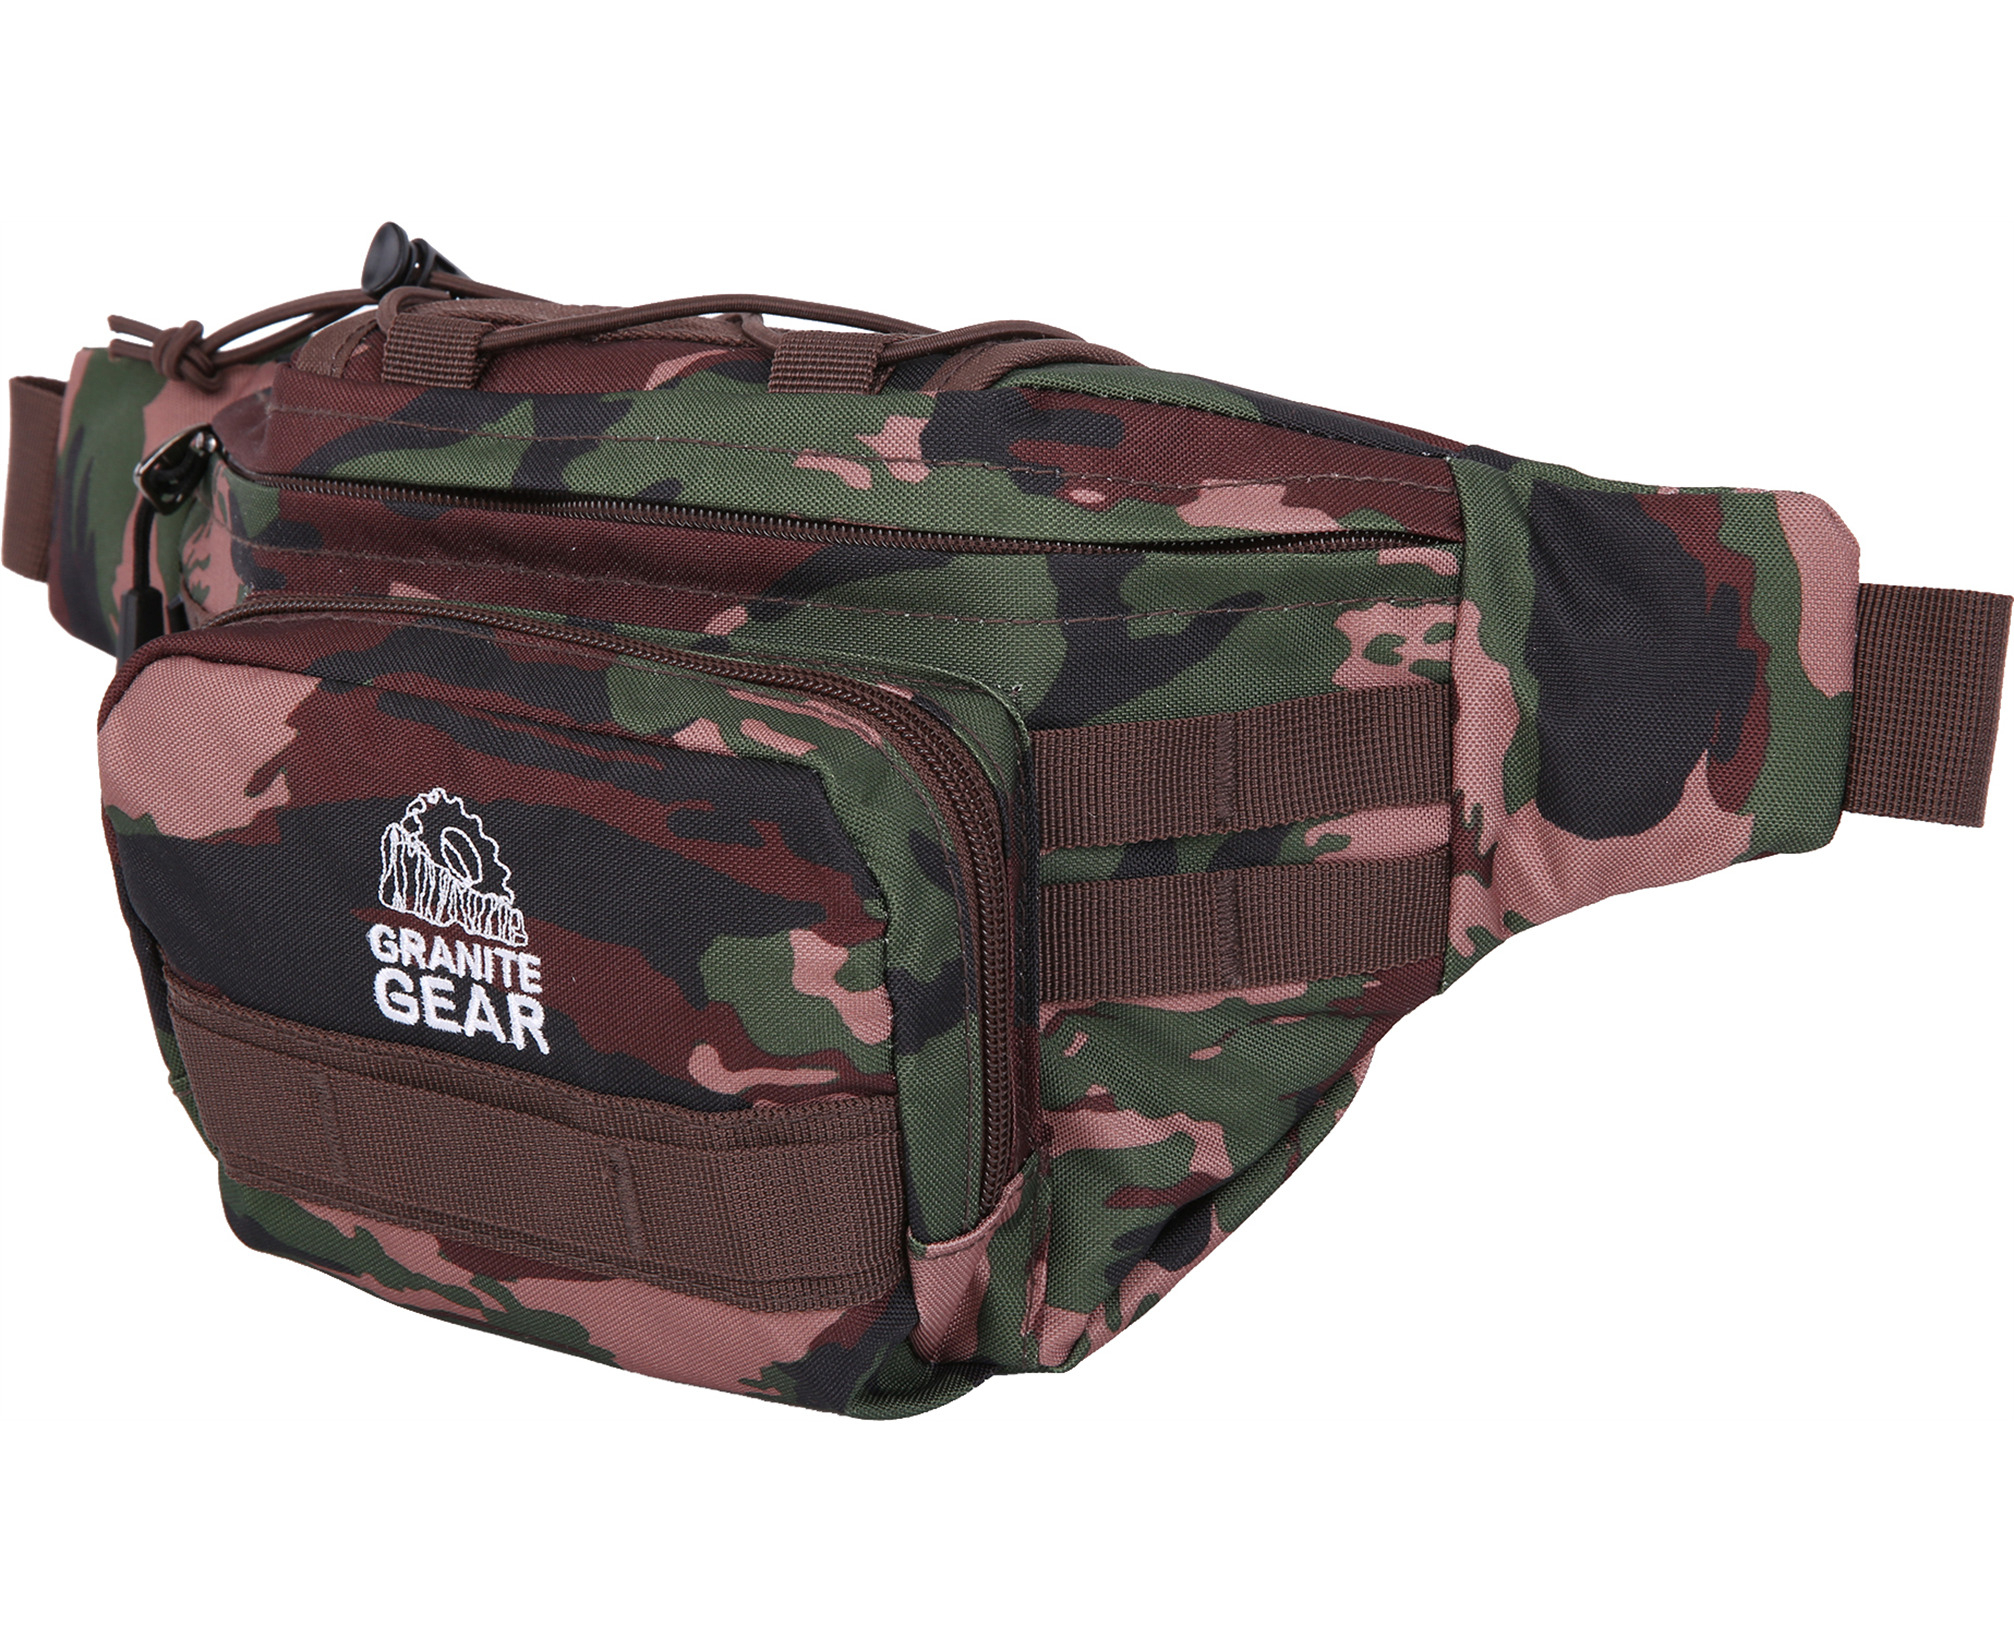 Granite Gear Waterproof Funny Bag Travel Bum Bag Camping Hiking Shoulder Bag